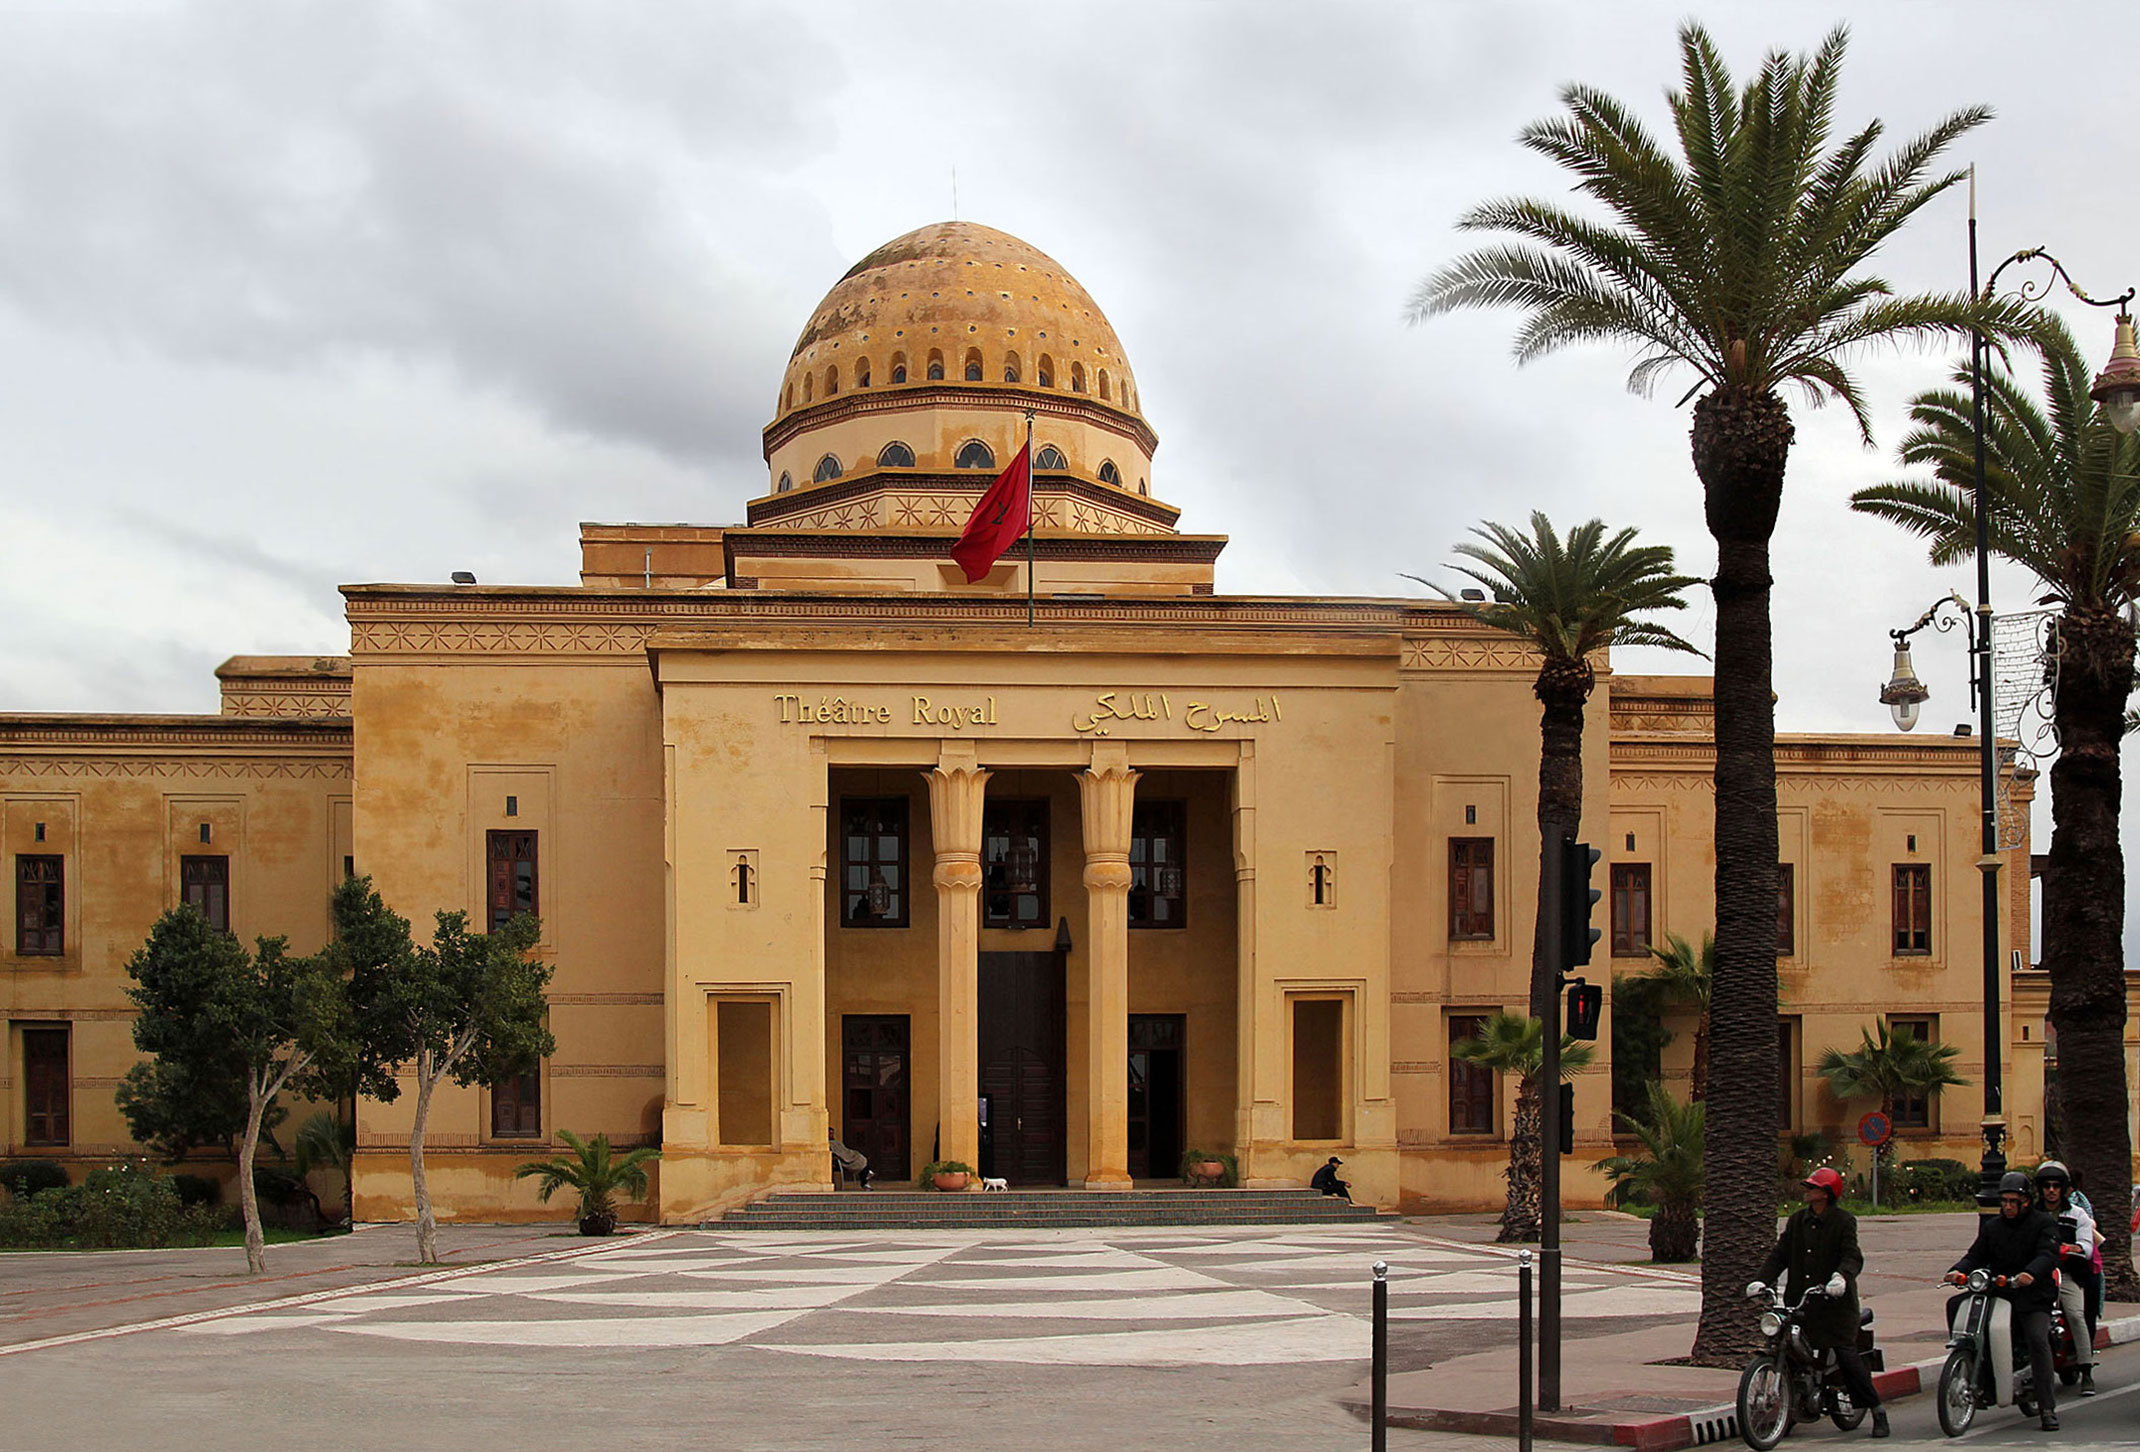 Maroco.Theatre Royal